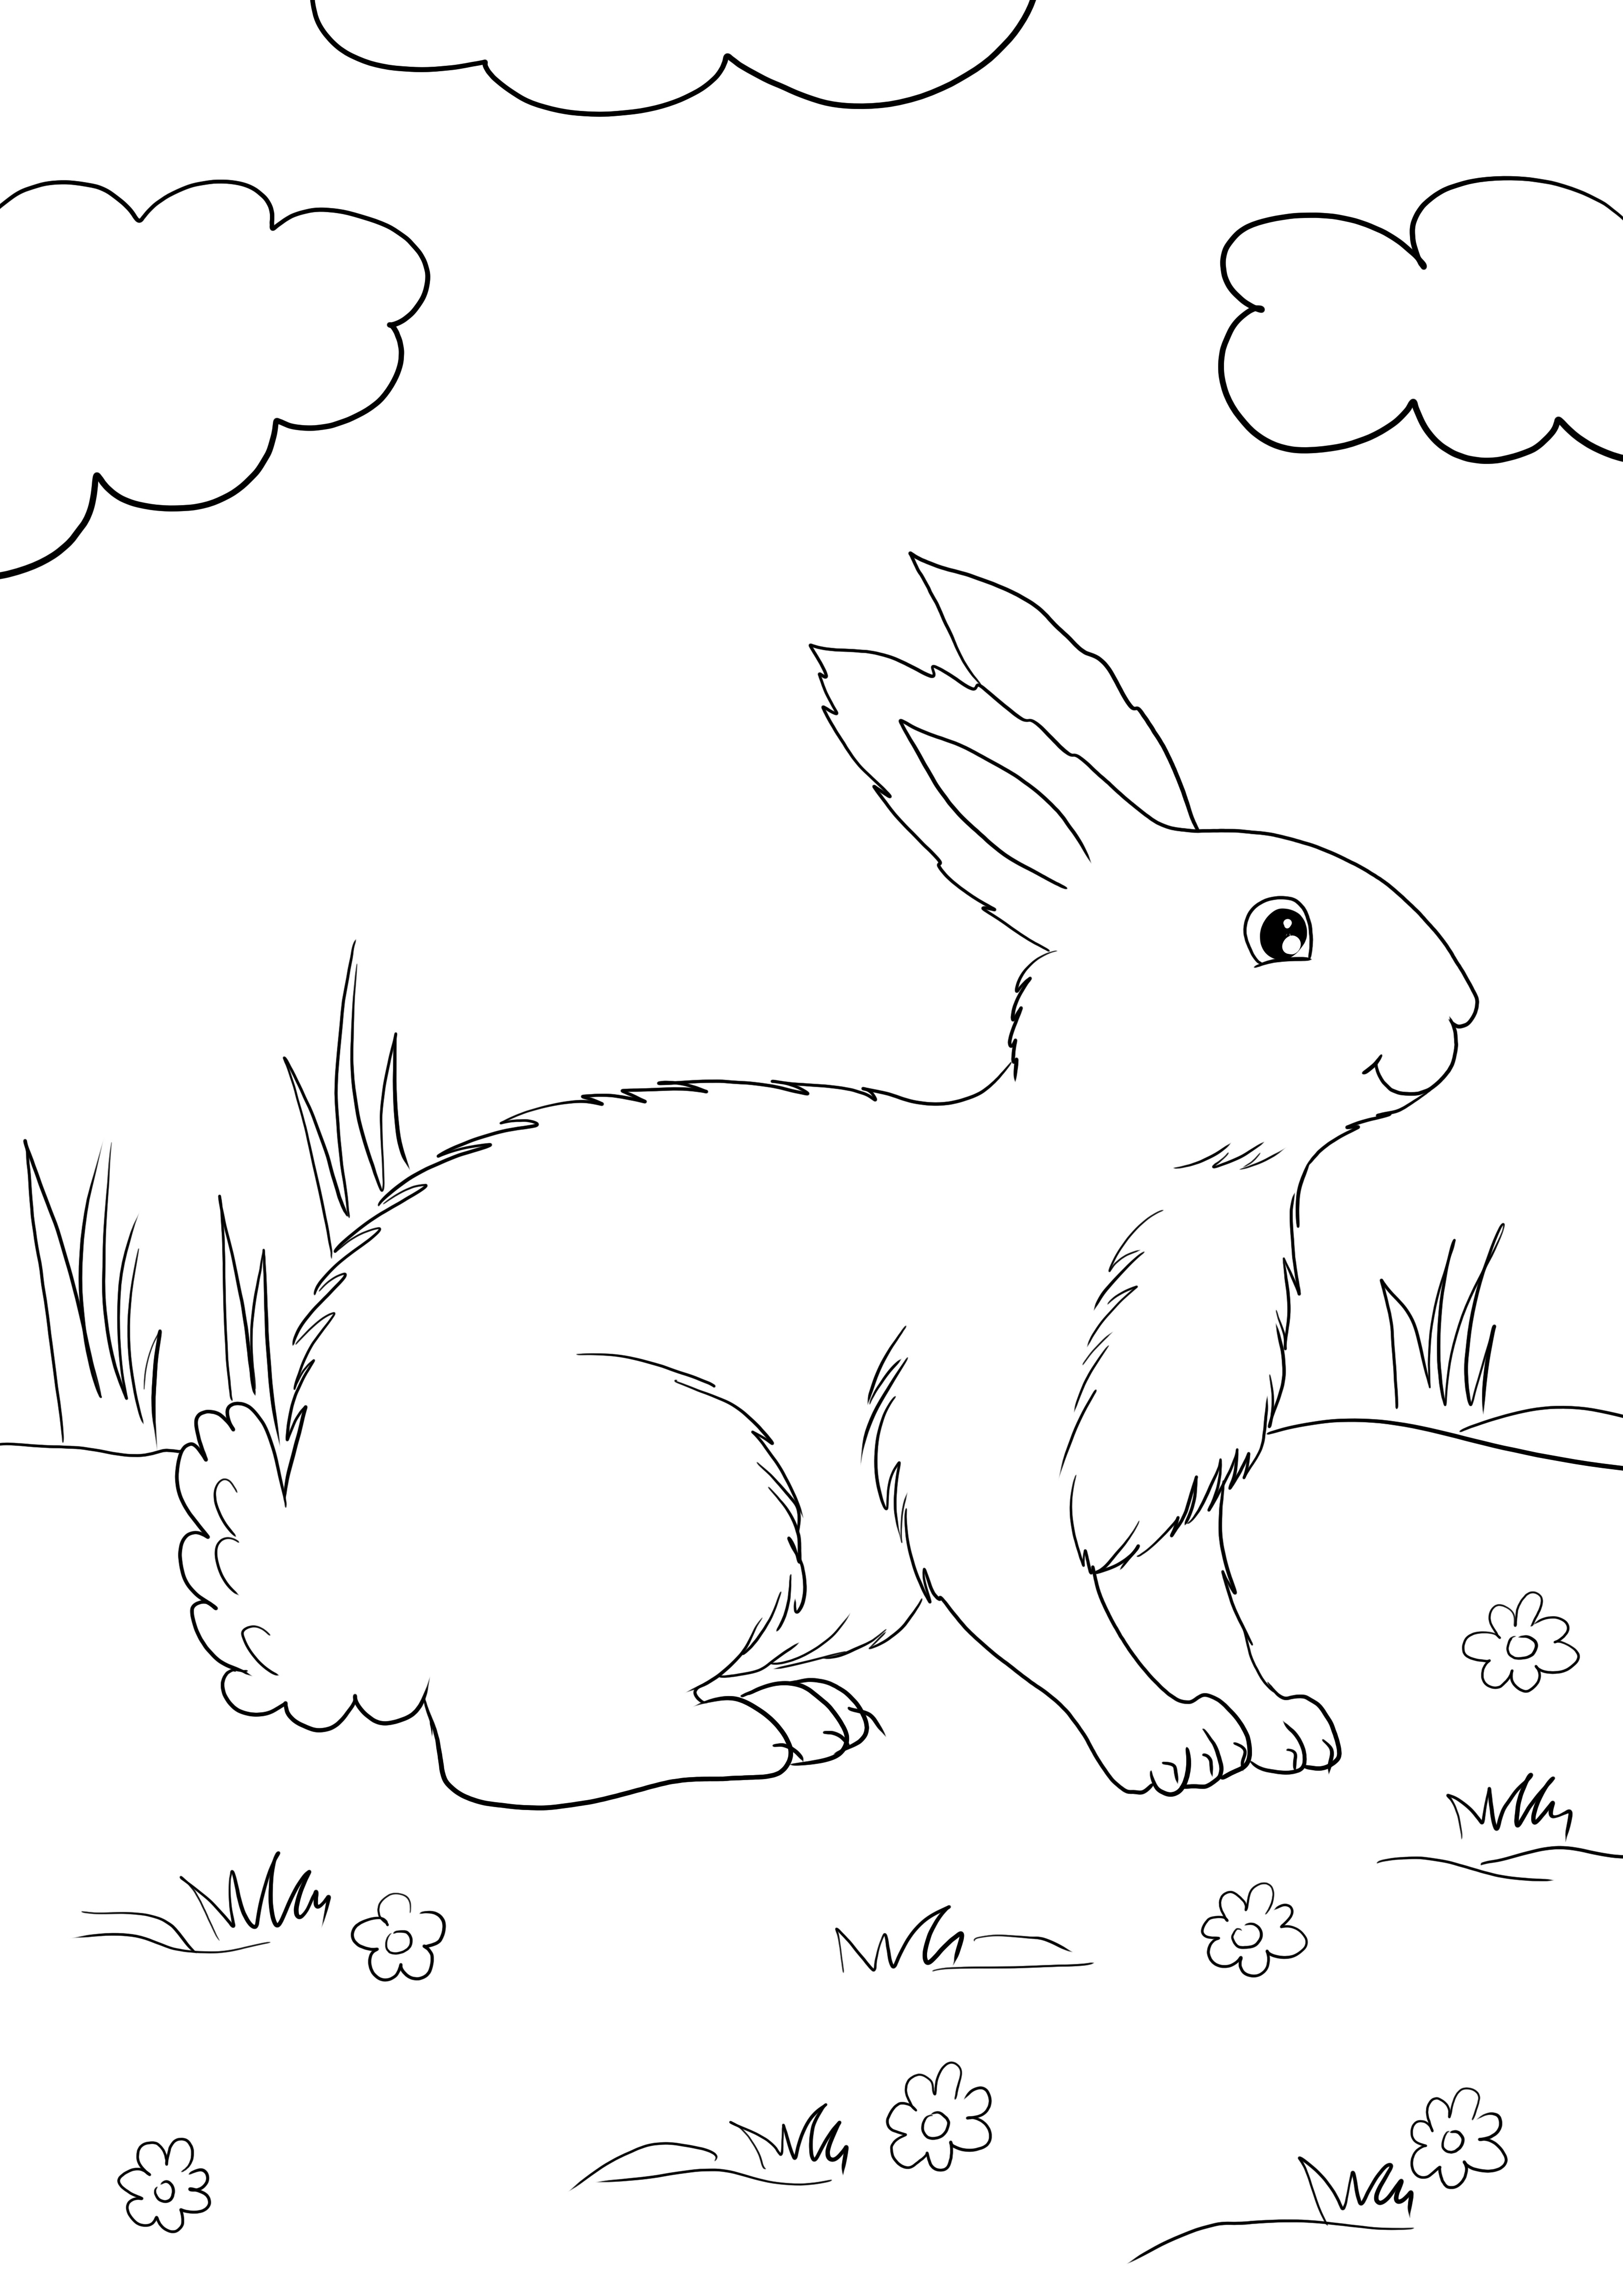 Söpö White Rabbit -ilmaiskappale, joka on helppo tulostaa ja värittää ja oppia kaneista